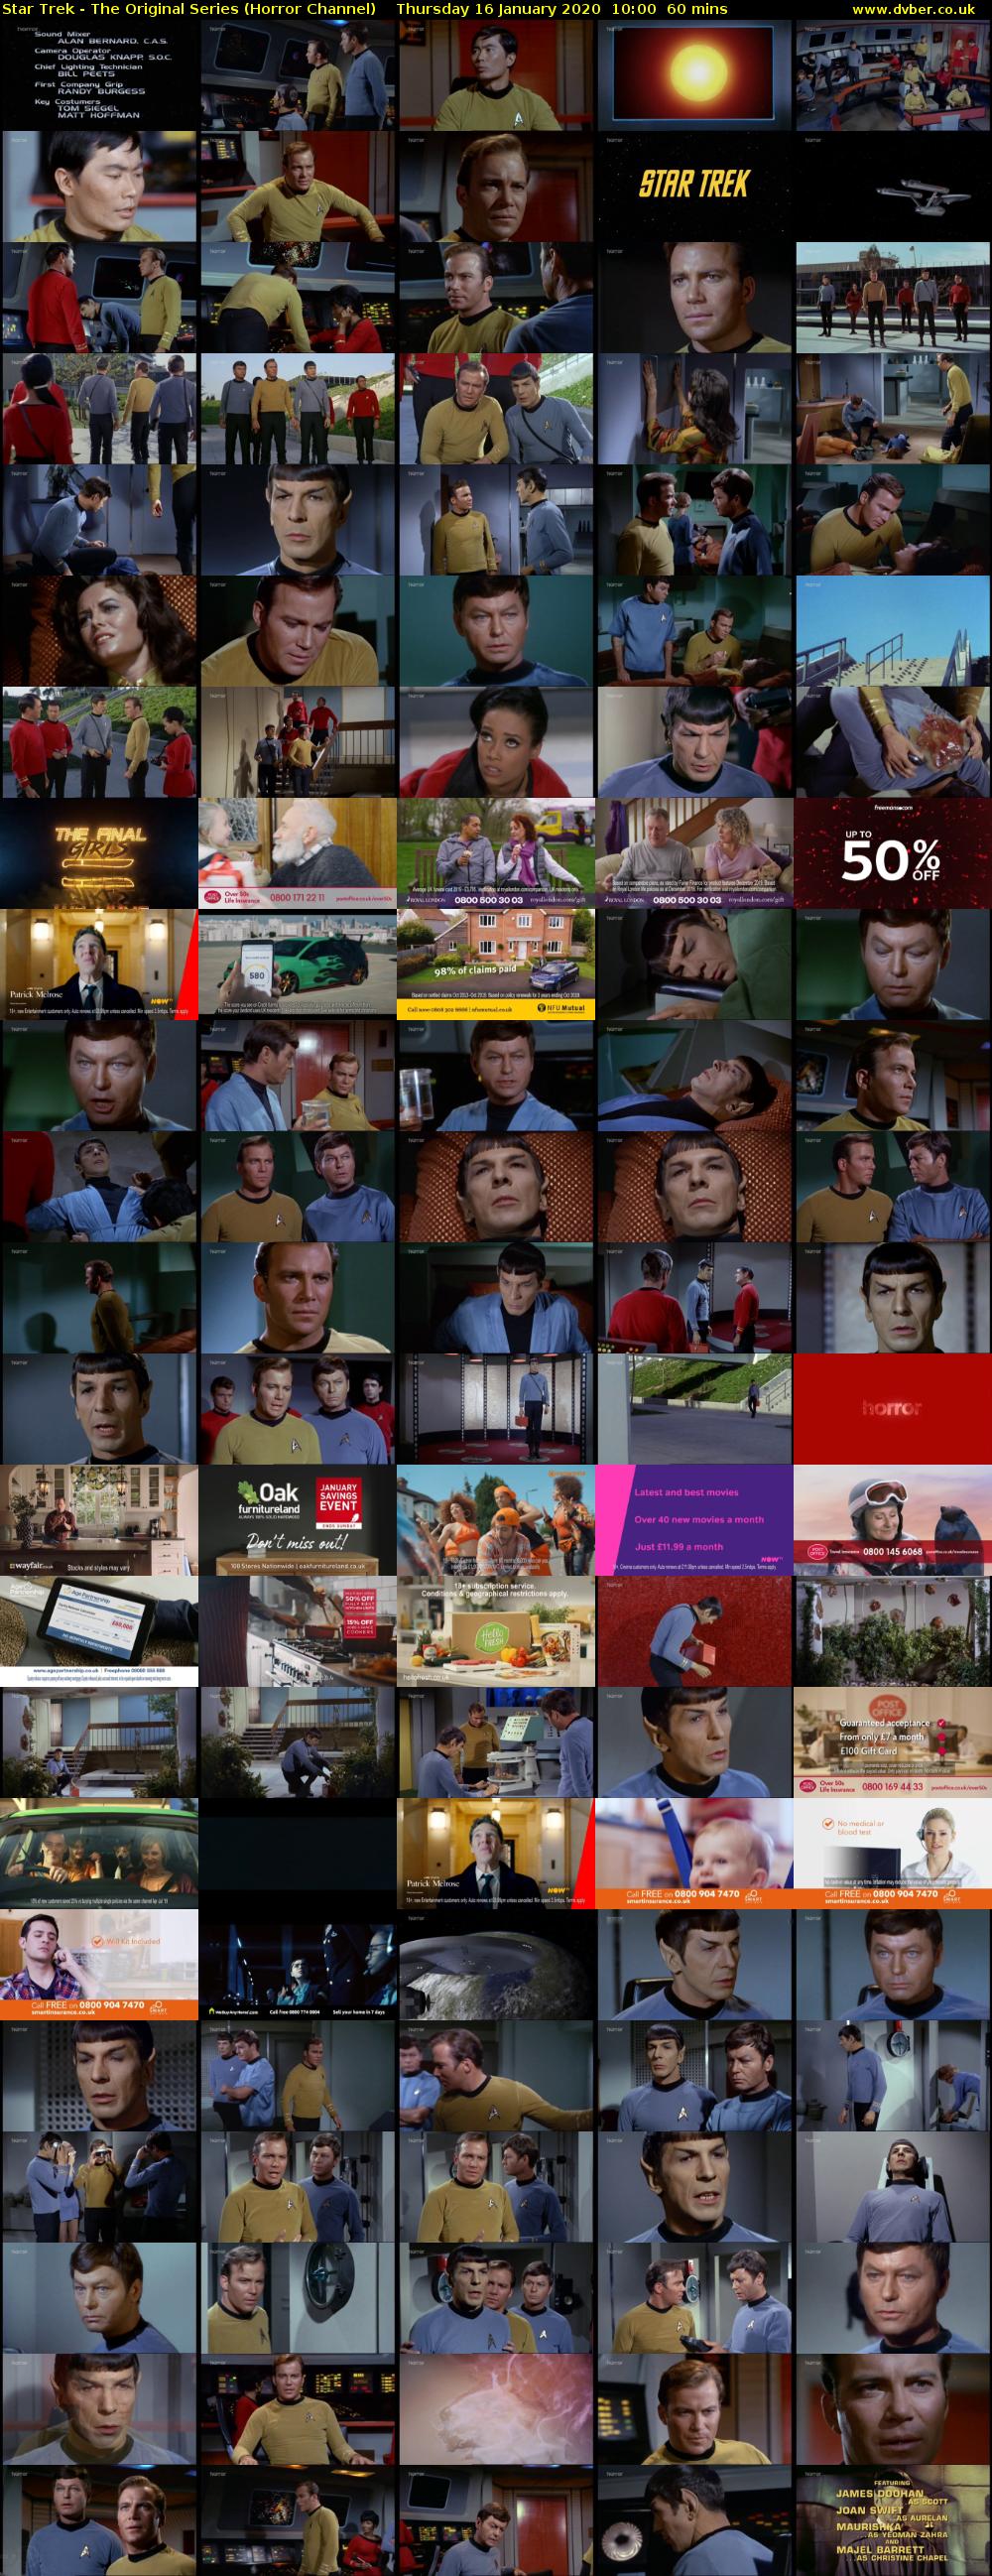 Star Trek - The Original Series (Horror Channel) Thursday 16 January 2020 10:00 - 11:00